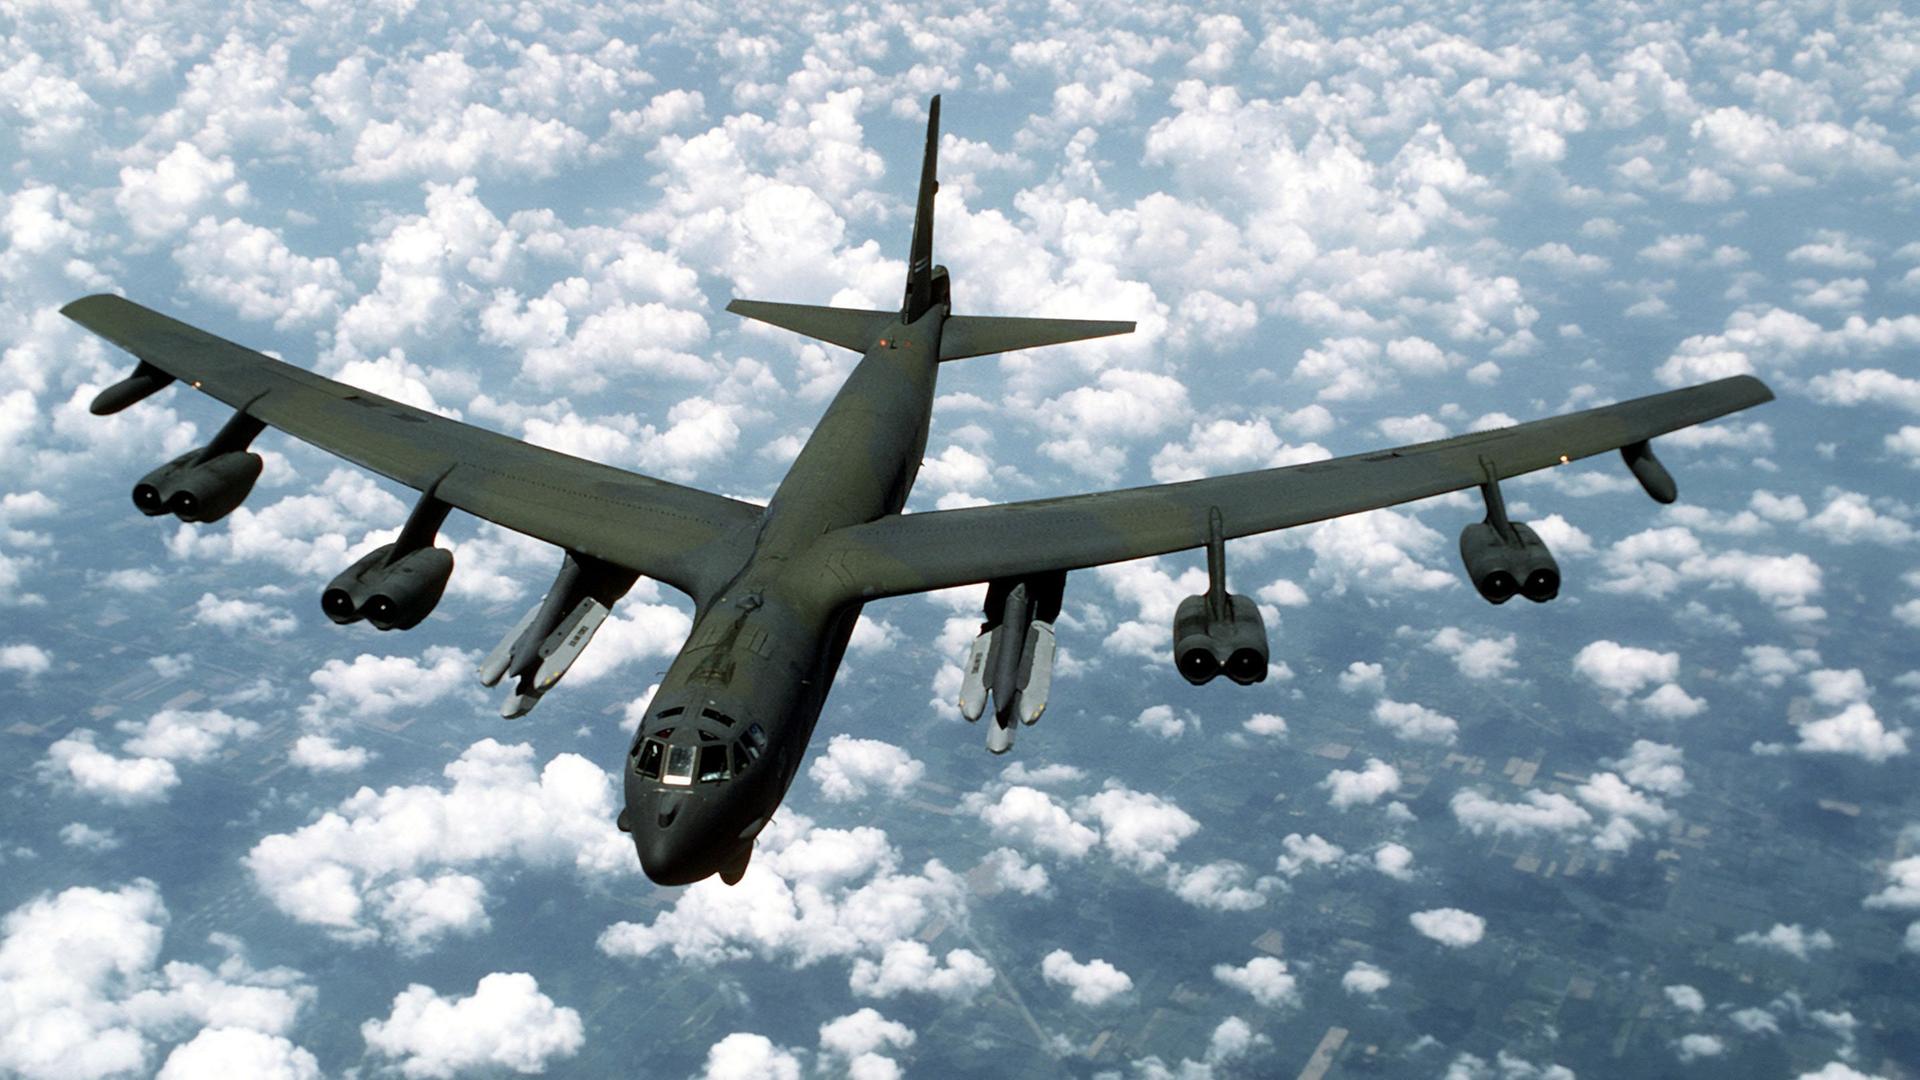 Luftaufnahme eines B-52G Stratofortress Bombers. Die Maschine ist mit Luft-Boden Raketen des Types AGM-86B bewaffnet.